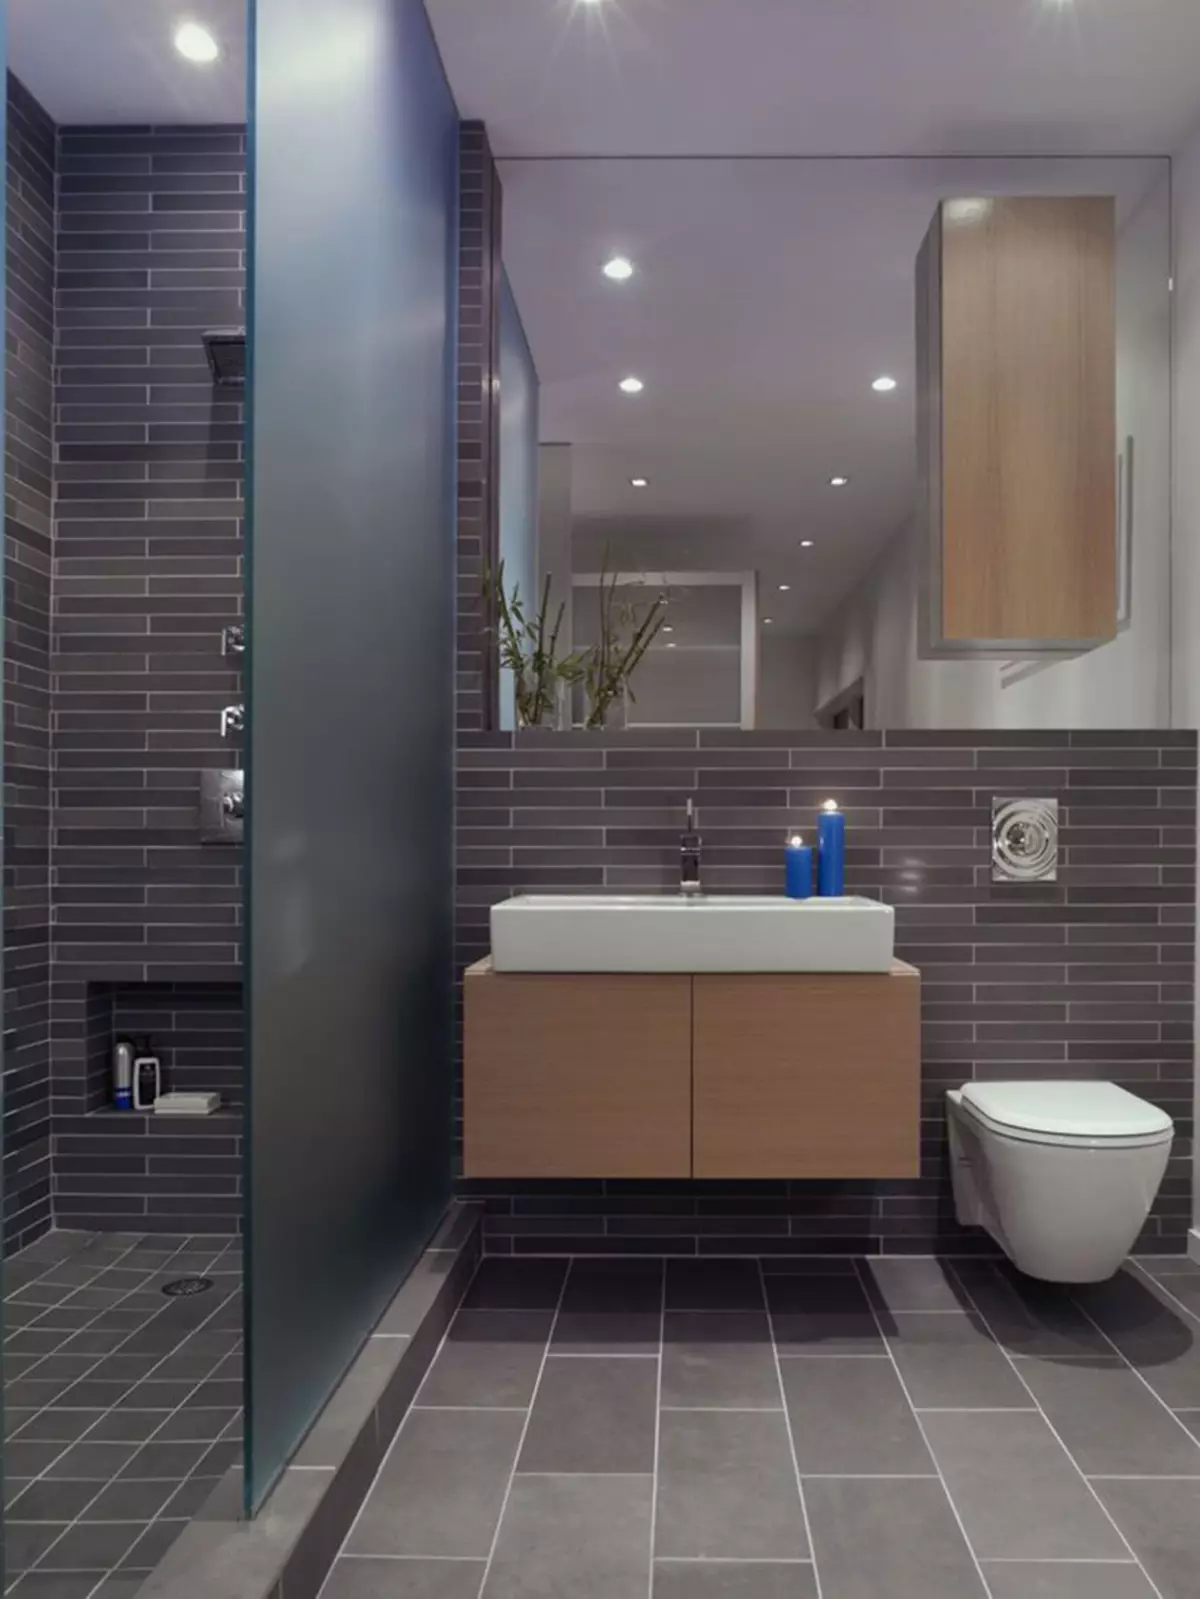 Design vu kombinéiert Buedzëmmer 6 Quadratmeter. M (77 Fotoen): Interieur Design mat Toilette, Bad Layout 2 bis 3 Meter 10454_9